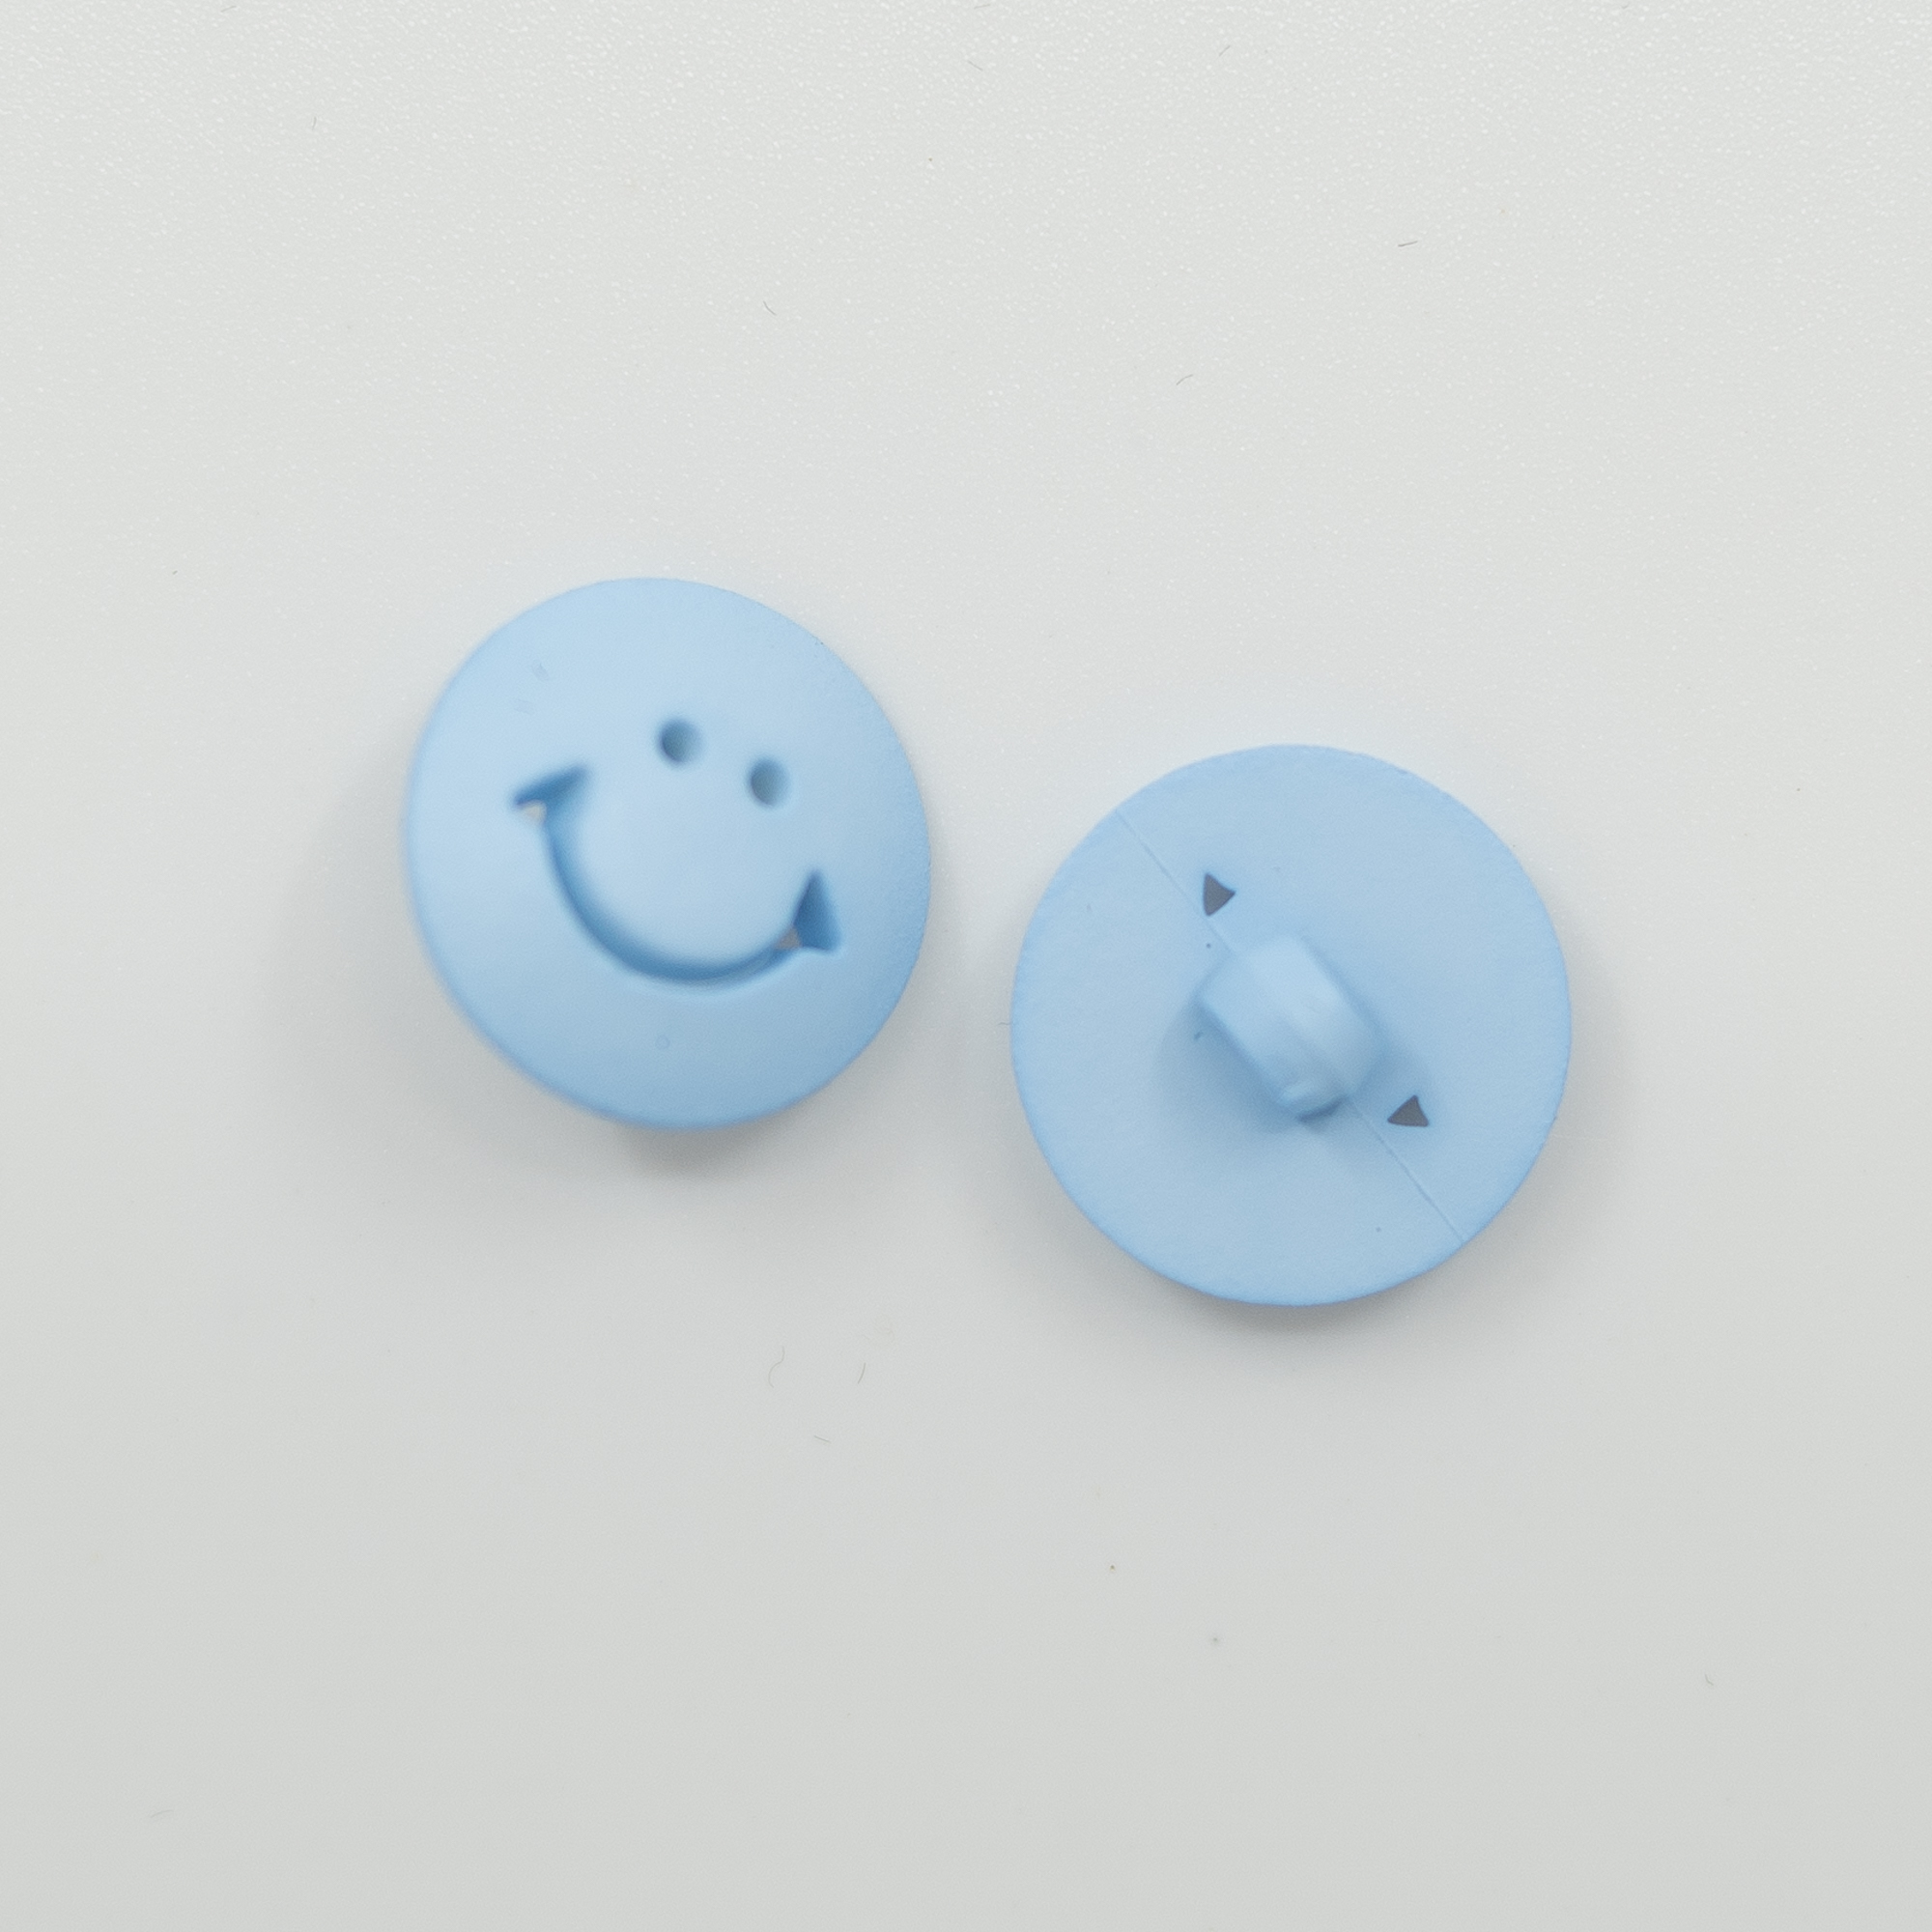  - Smiley knapp | Blå knapp barnestrikk | Knapper - by HipKnitShop - 26/06/2021